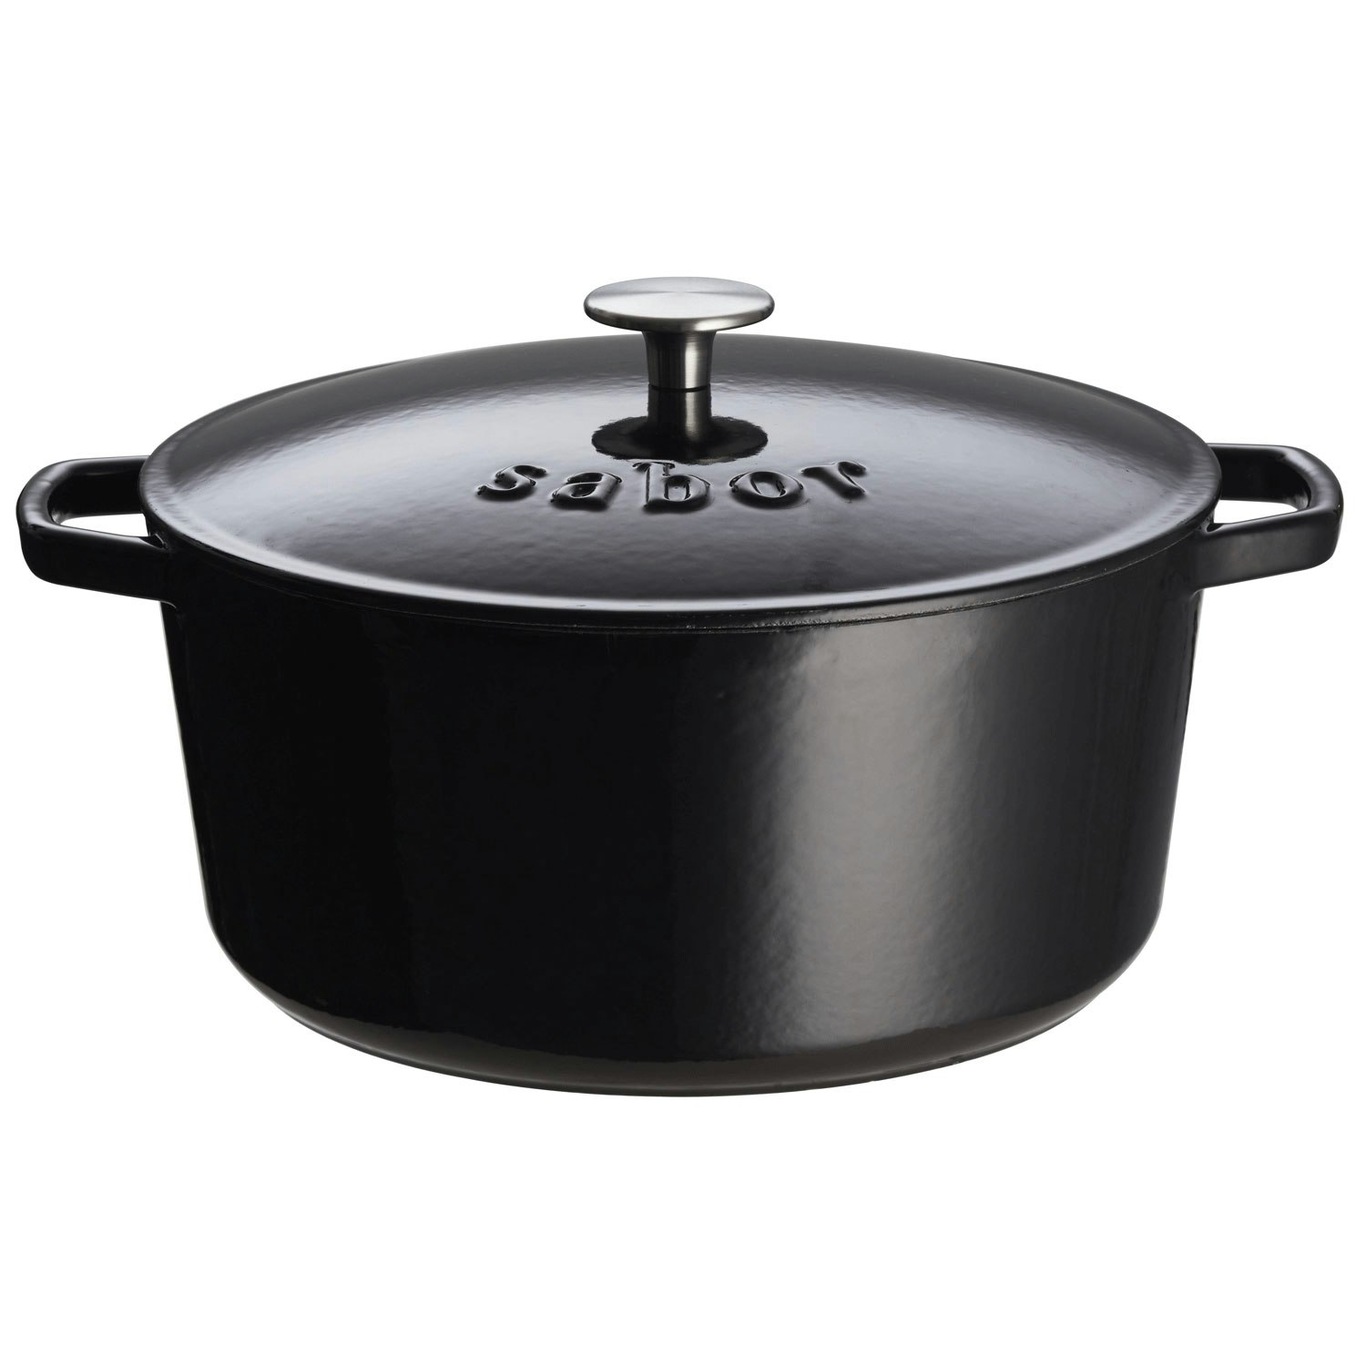 https://royaldesign.com/image/2/sabor-cast-iron-pot-3-l-1?w=800&quality=80